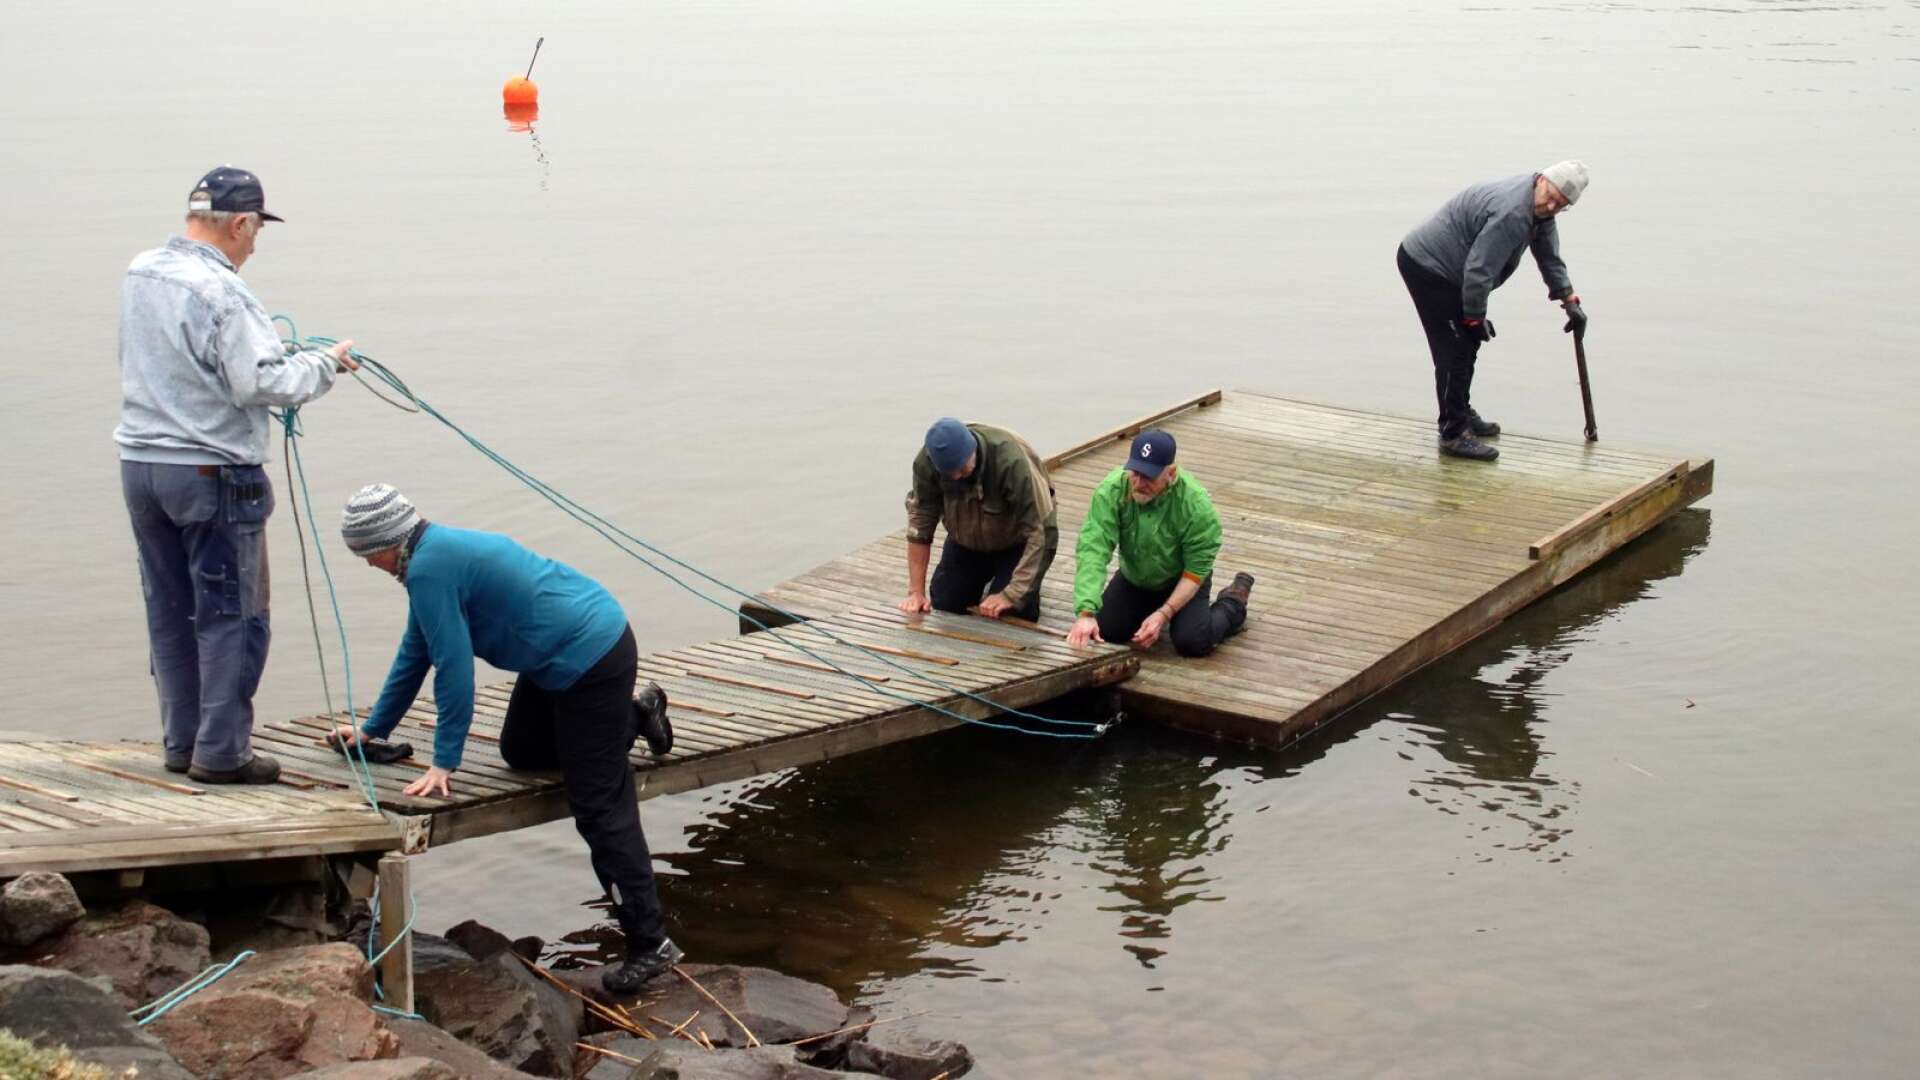 Åmåls kanotföreningen har dragit igång säsongen. Från vänster: Christer Alfredsson, Annika Nilsson, Jan Westbom, Mojje Björn och Mats Andersson jobbar med det sista för att få bryggan på plats.